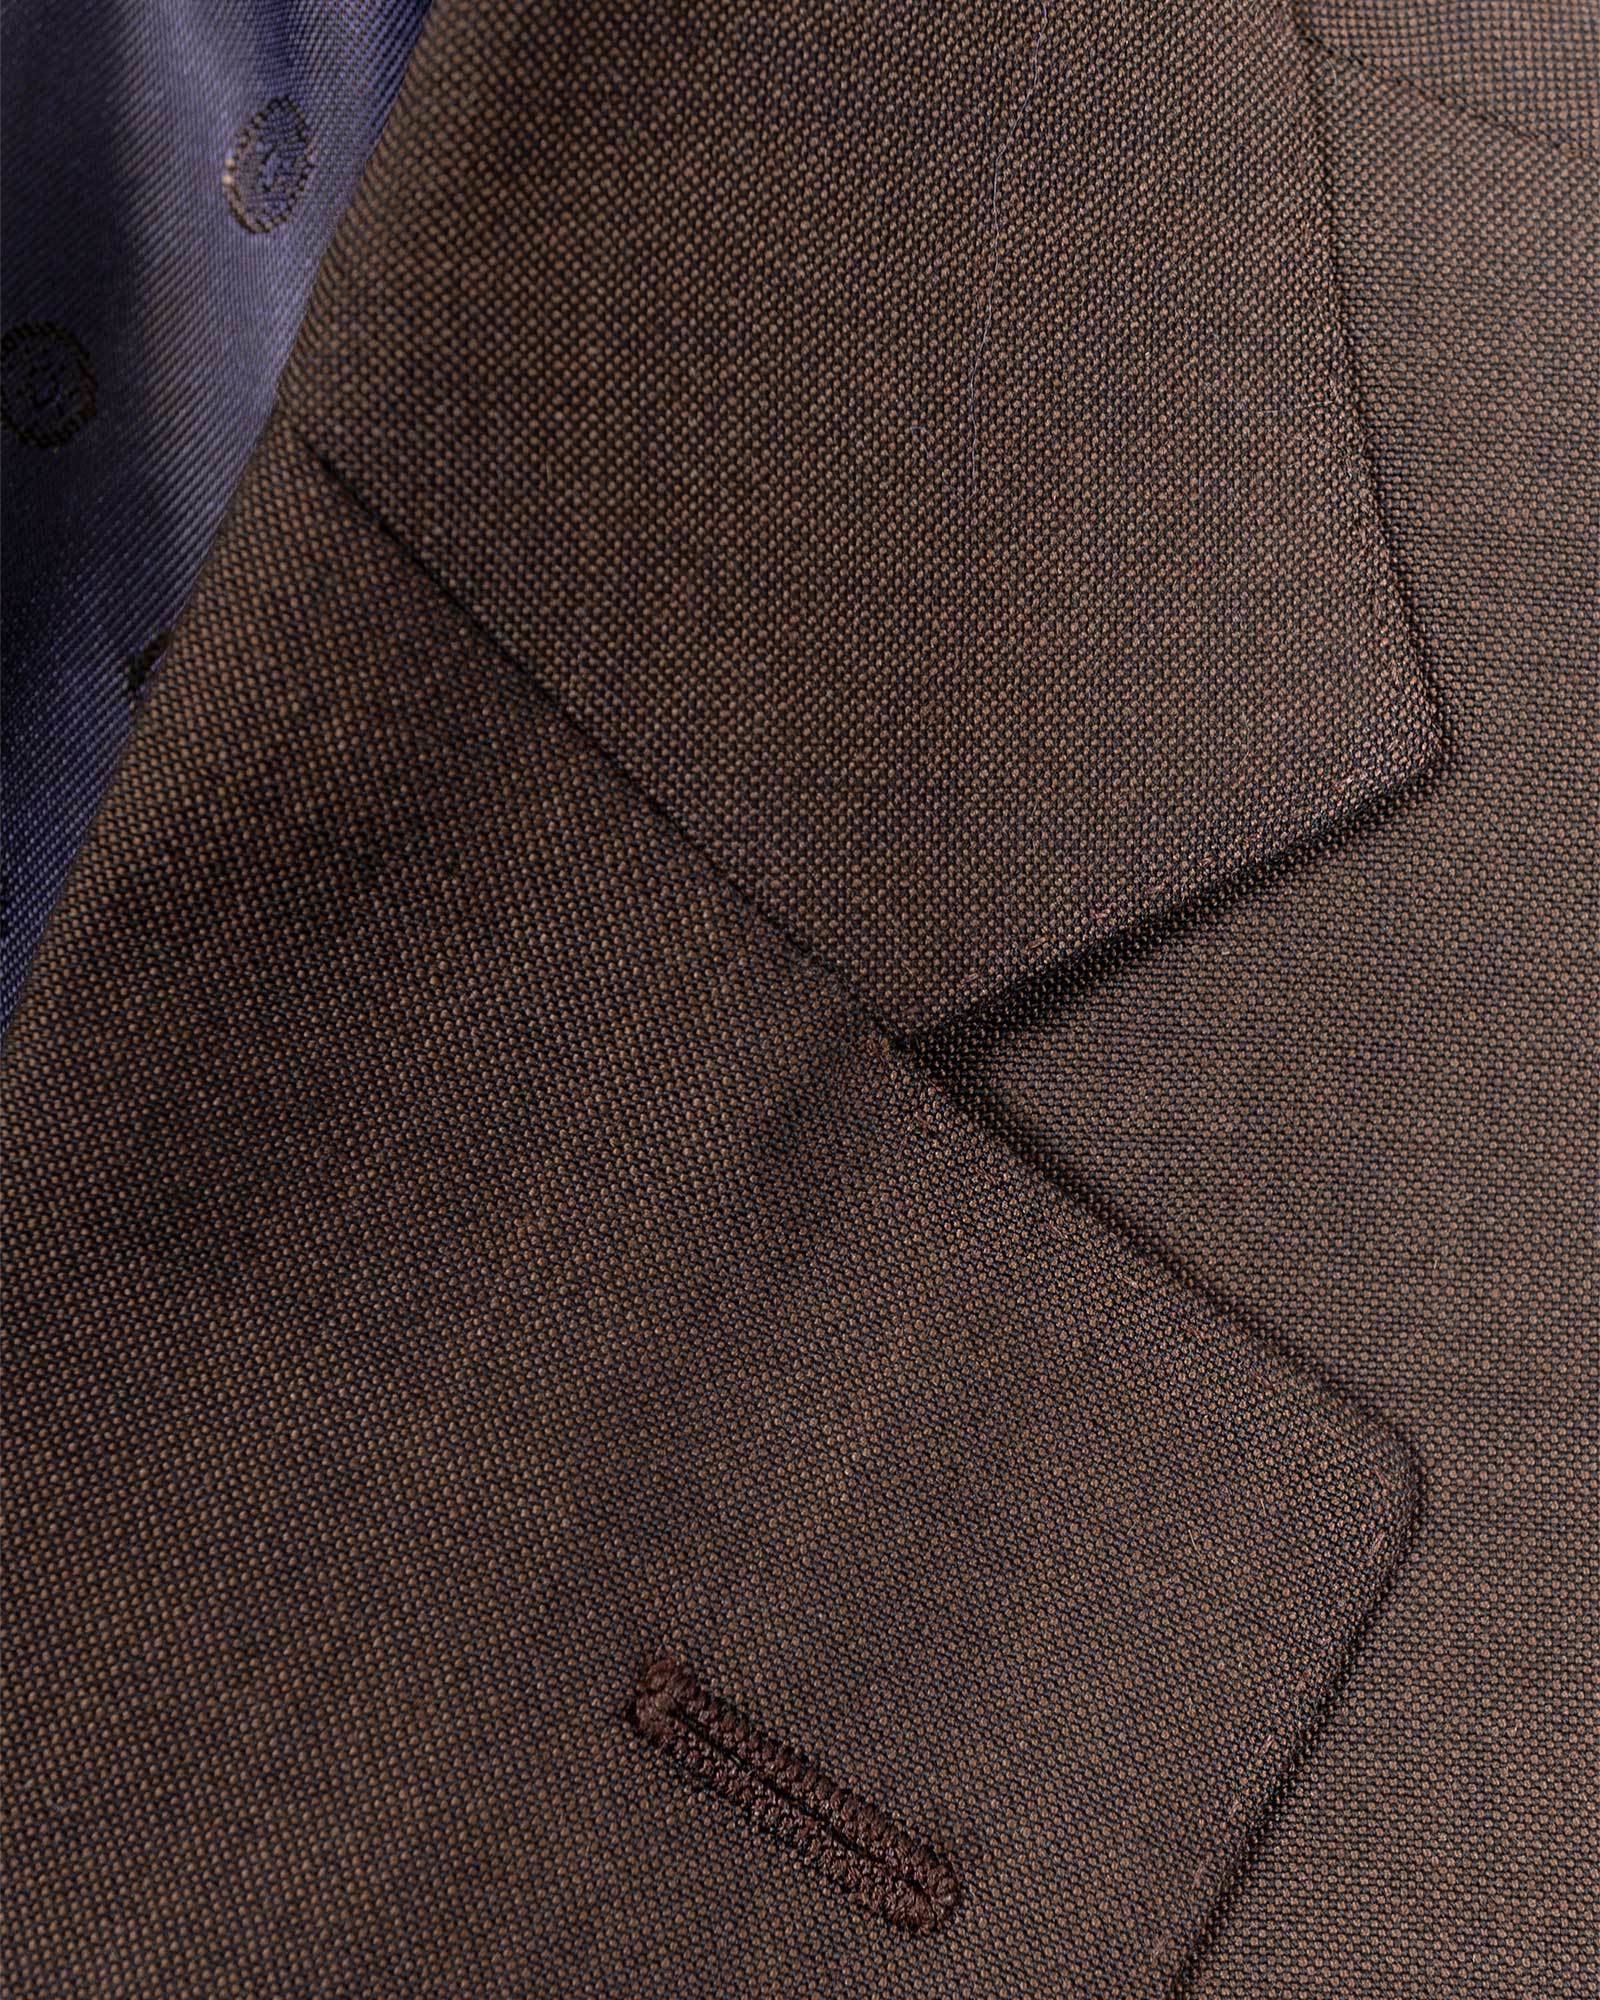 Model 60 Copper Suit